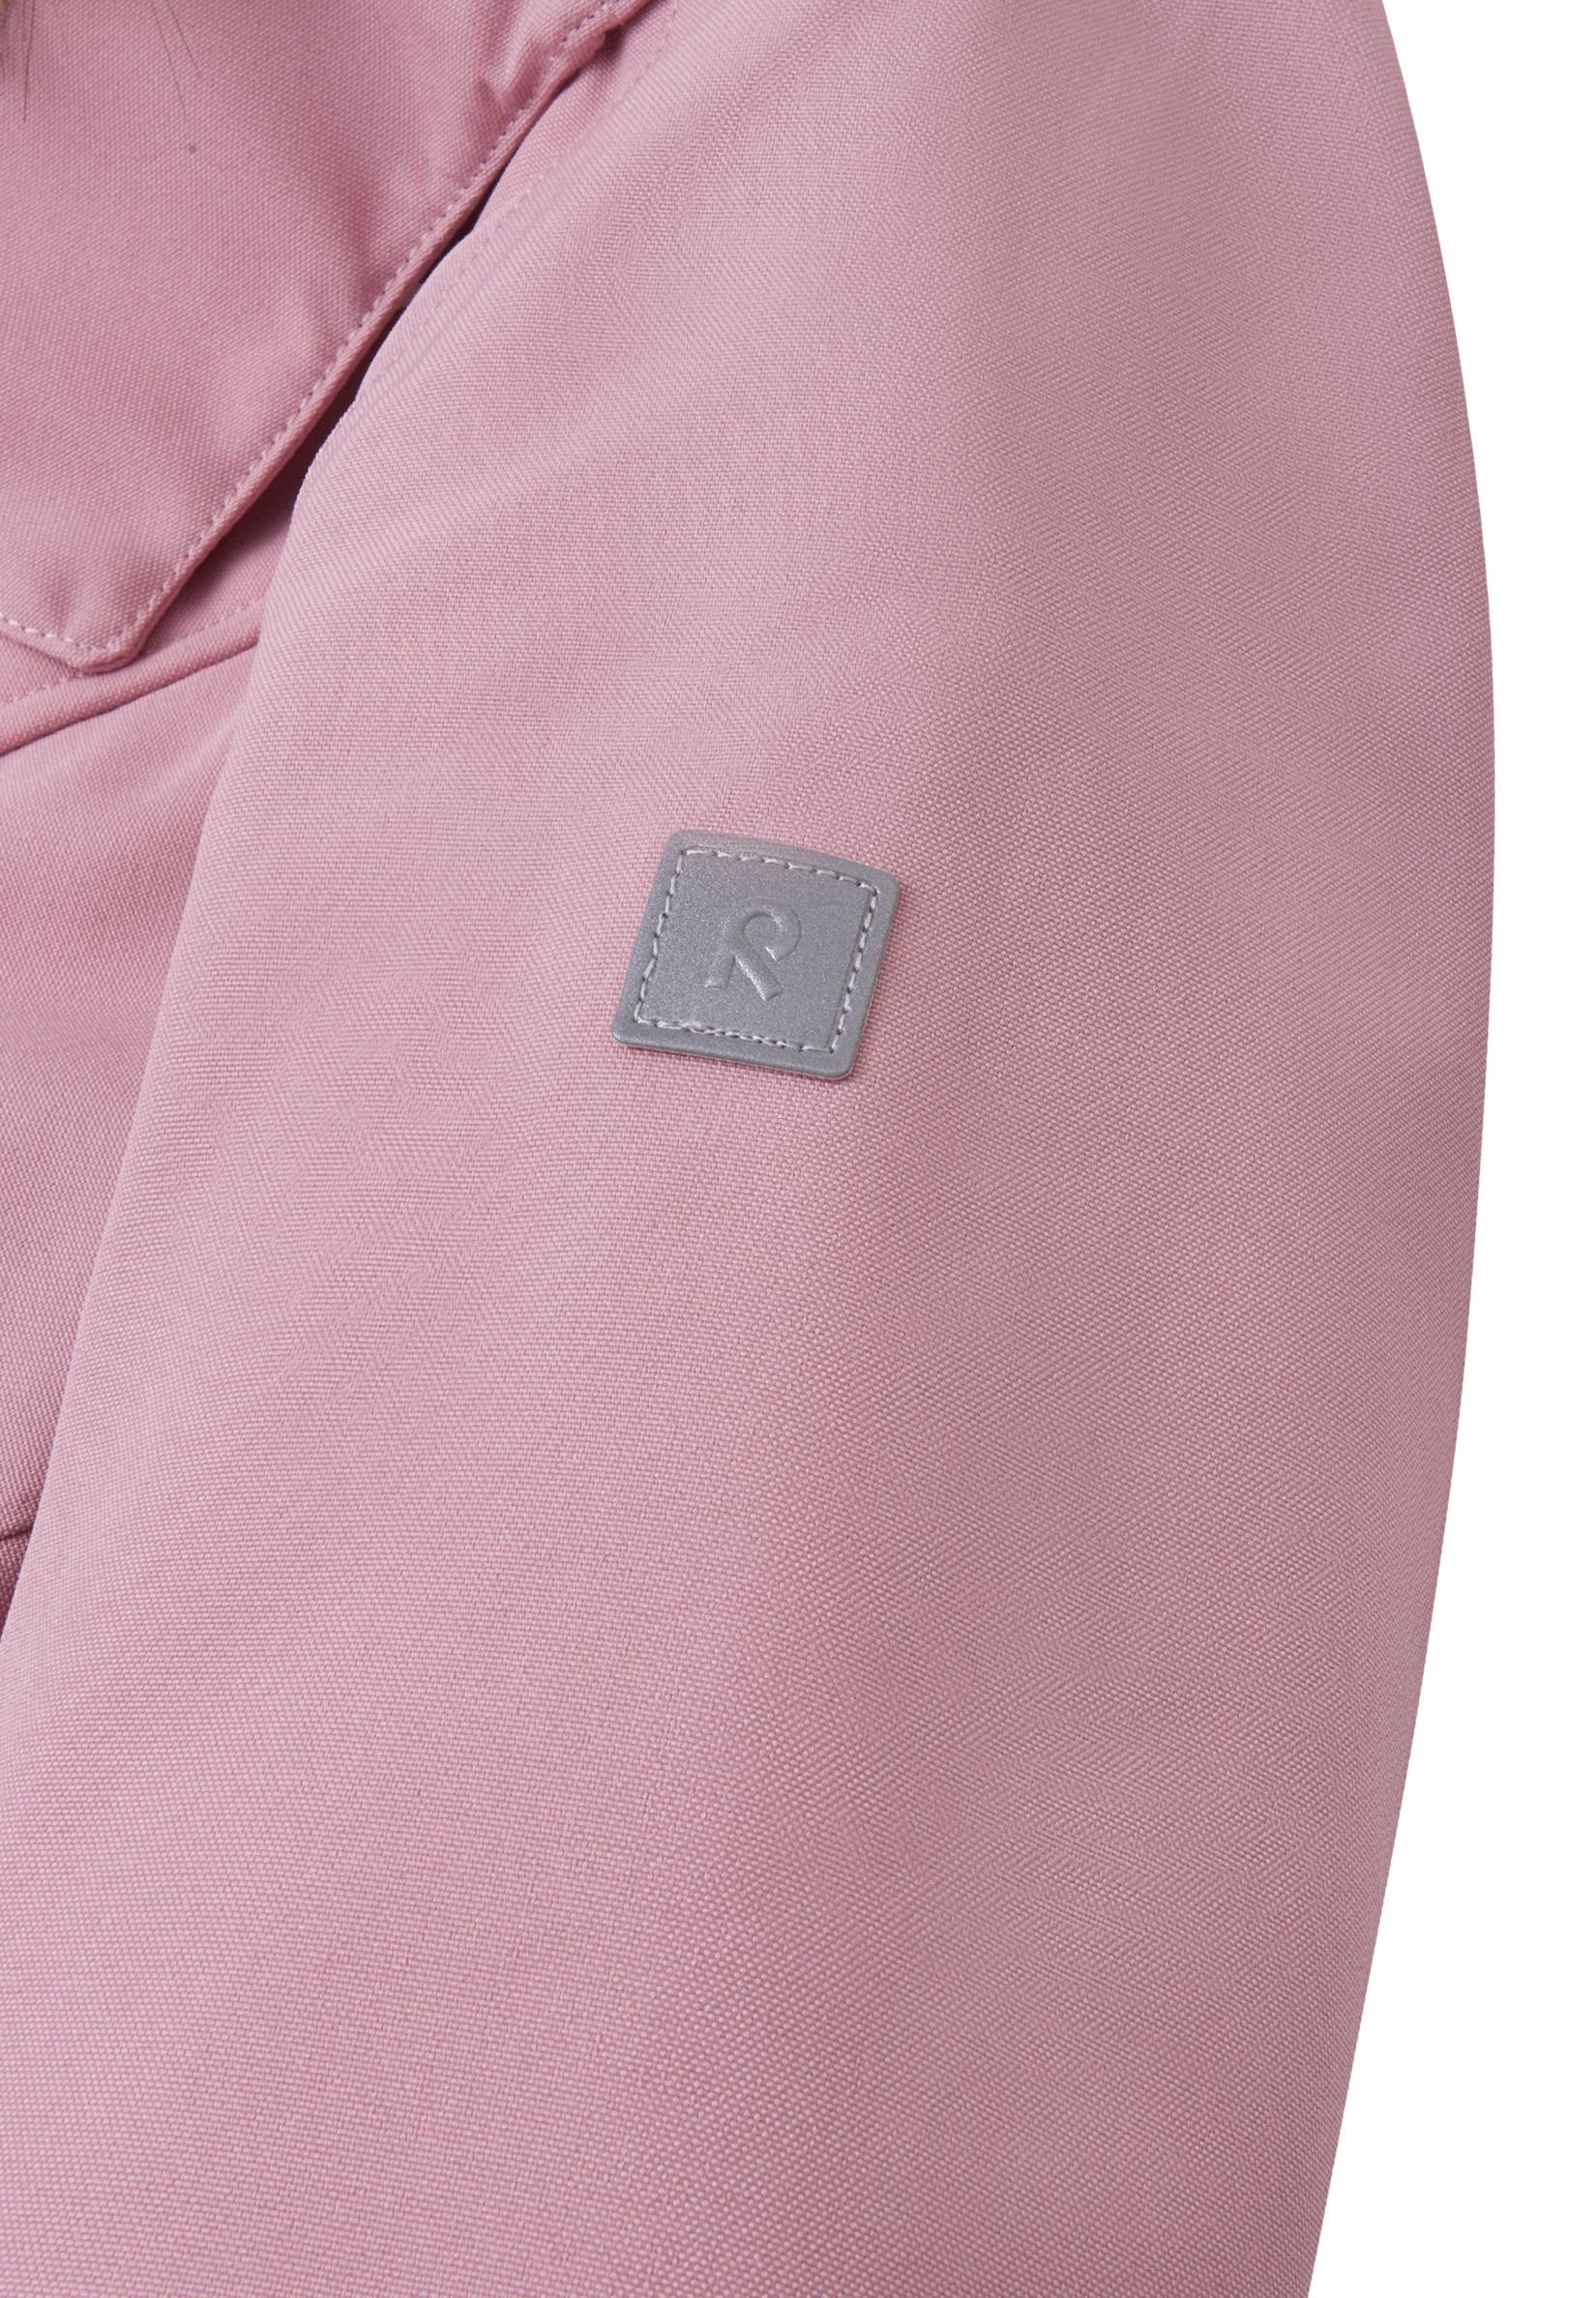 wasserdicht, und und atmungsaktiv Haupt- Trondheim Pink Futtermaterial bluesign®-zertifiziertes Grey wärmend reima Schneeoverall